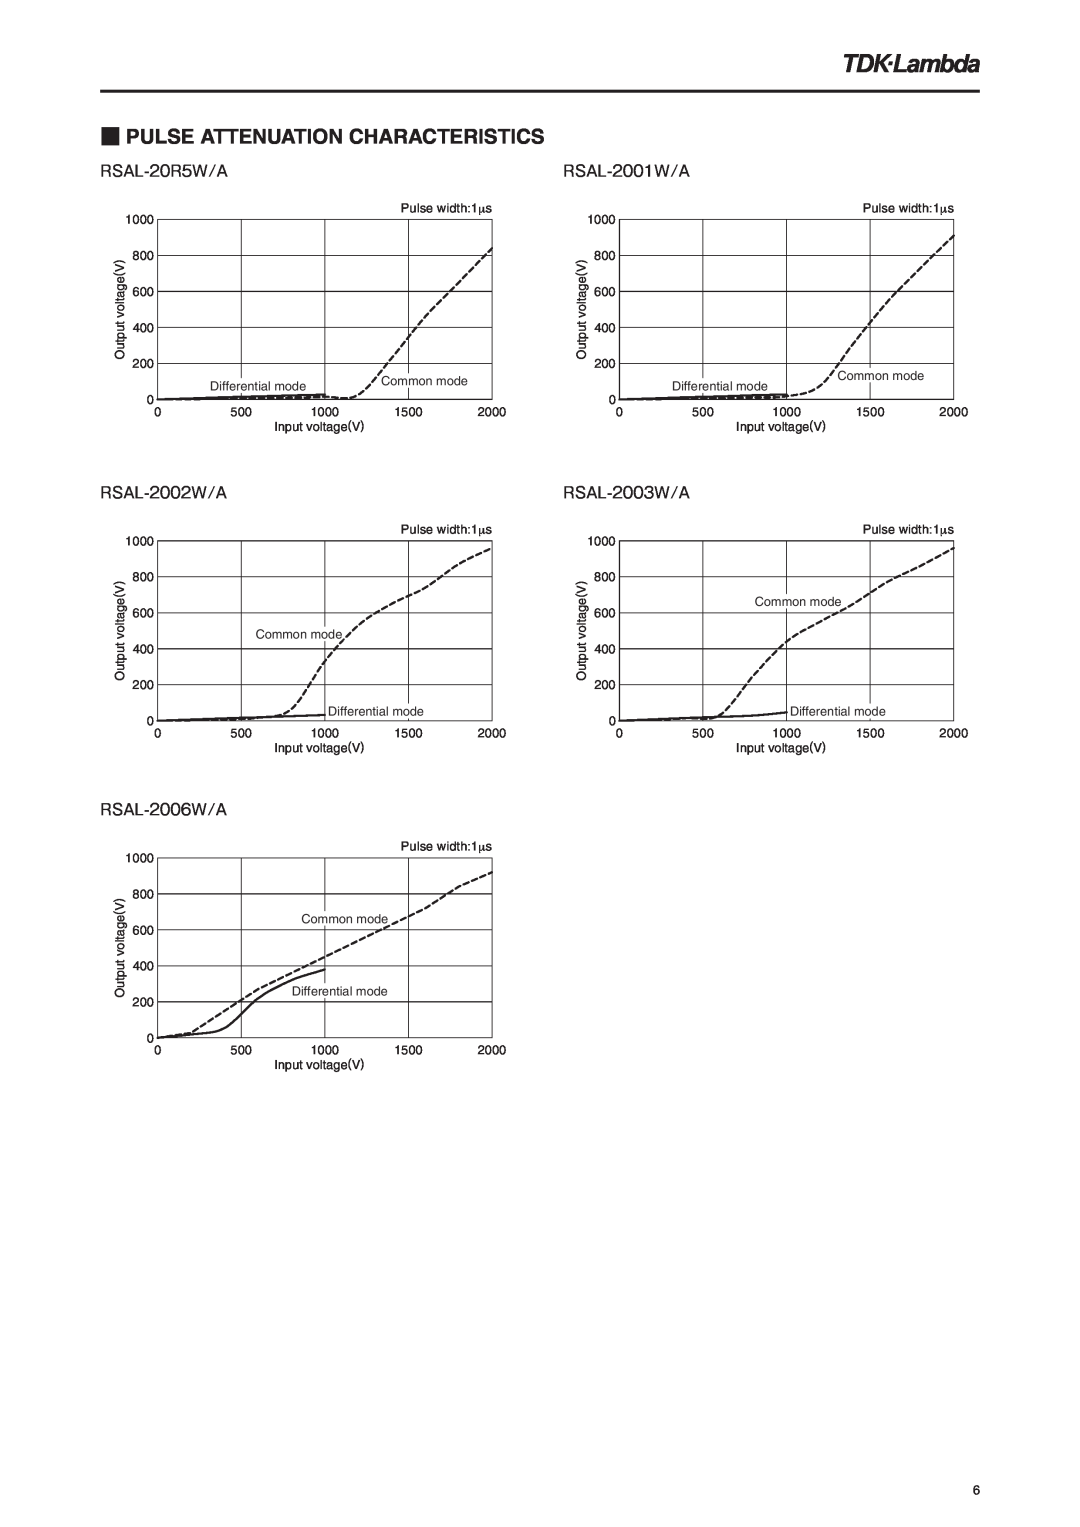 TDK Pulse Attenuation Characteristics, RSAL-20R5W/A, RSAL-2002W/A, RSAL-2006W/A, RSAL-2001W/A, RSAL-2003W/A 